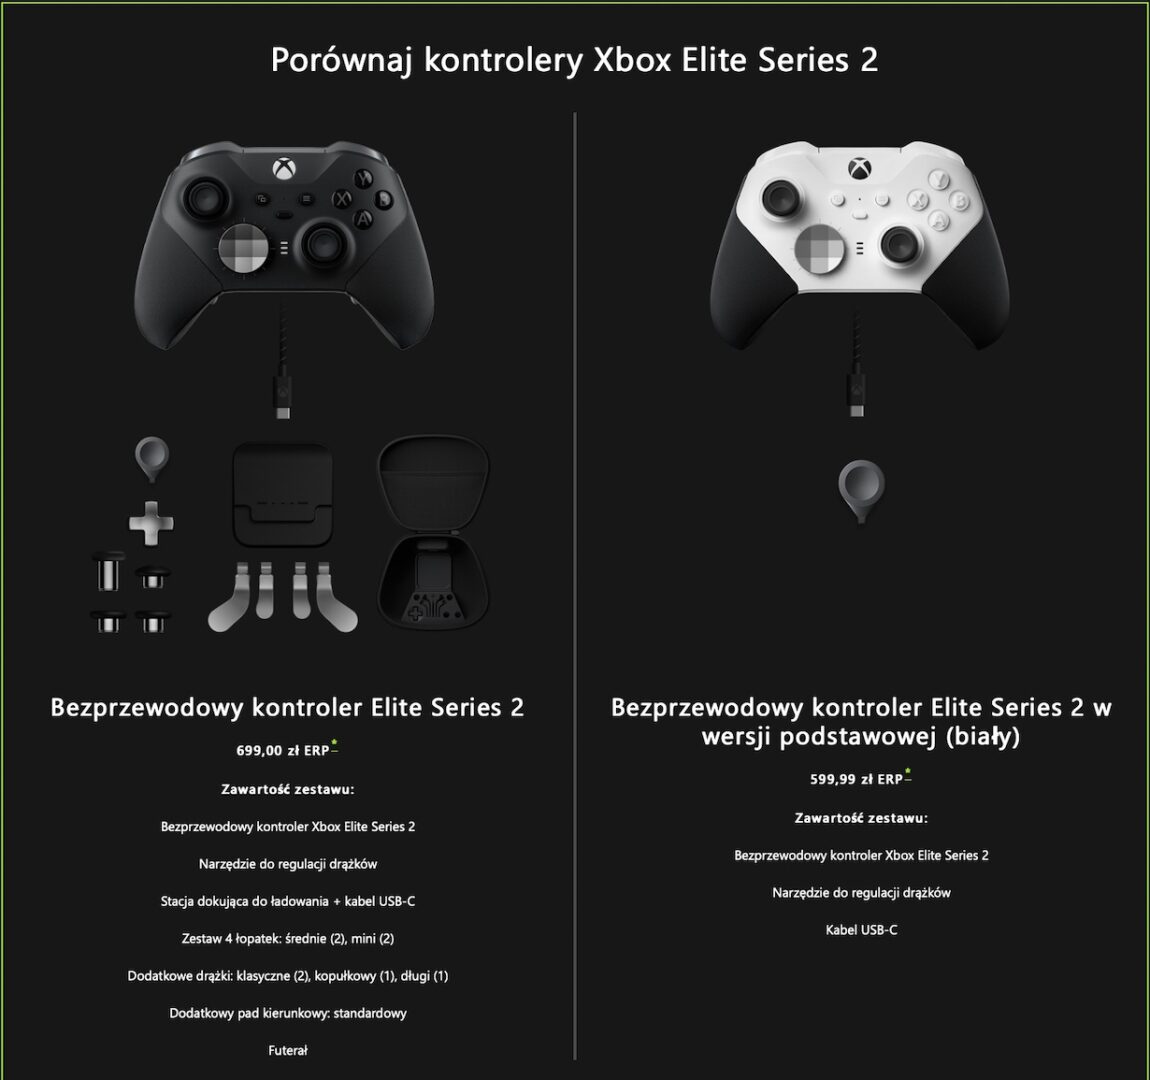 Tańszy kontroler Xbox Elite Series 2 w Polsce nie jest taki tani. Absurdalna cena!